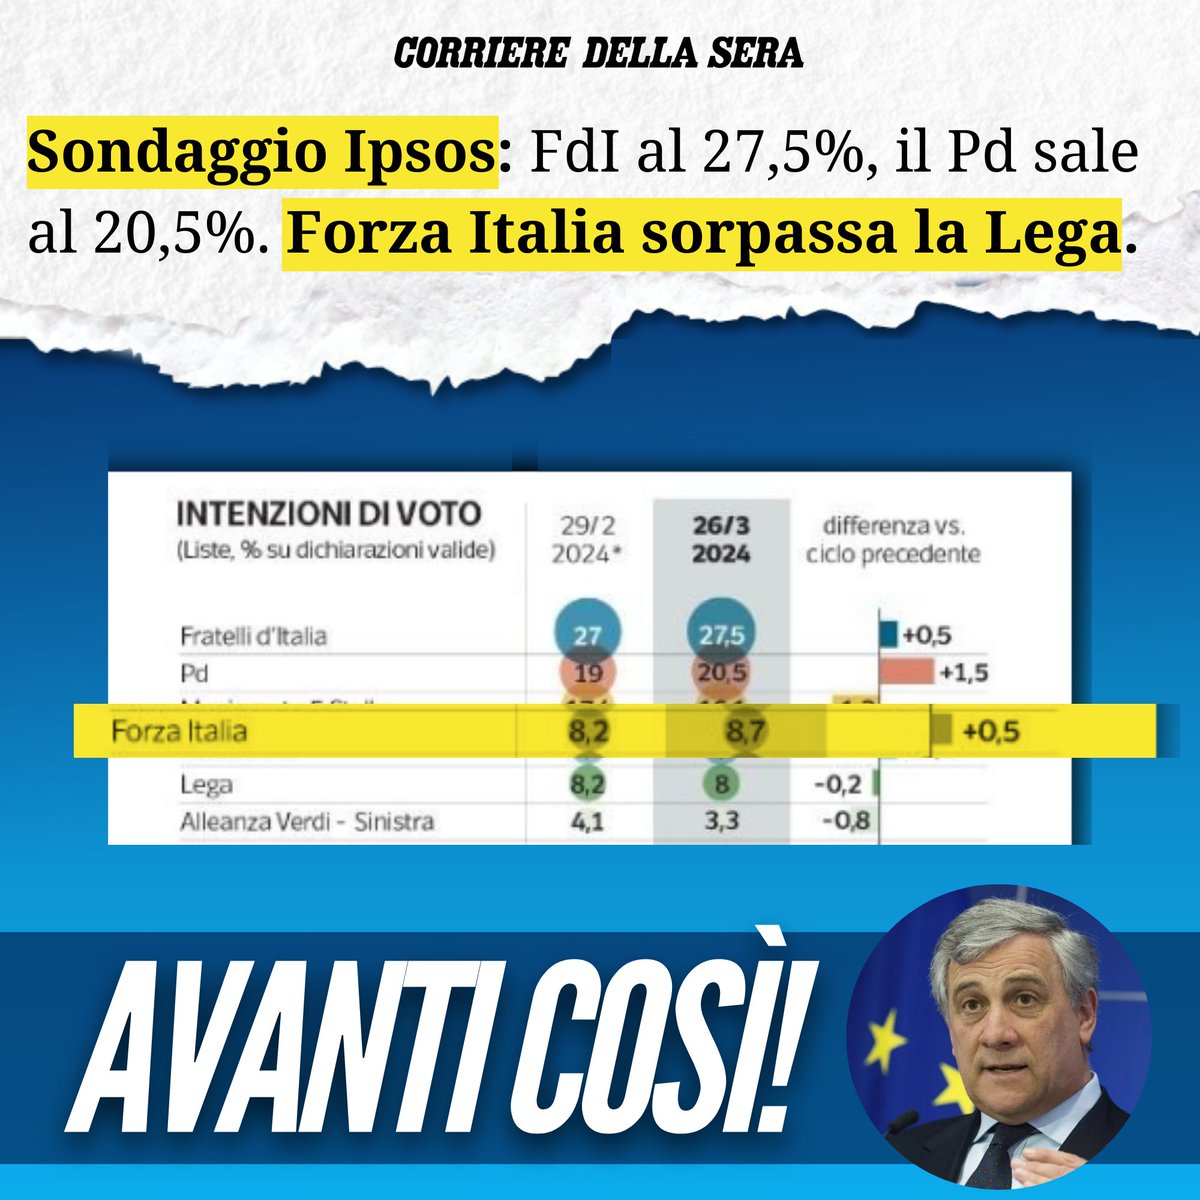 Forza Italia continua a crescere! Avanti così @Antonio_Tajani 🇮🇹